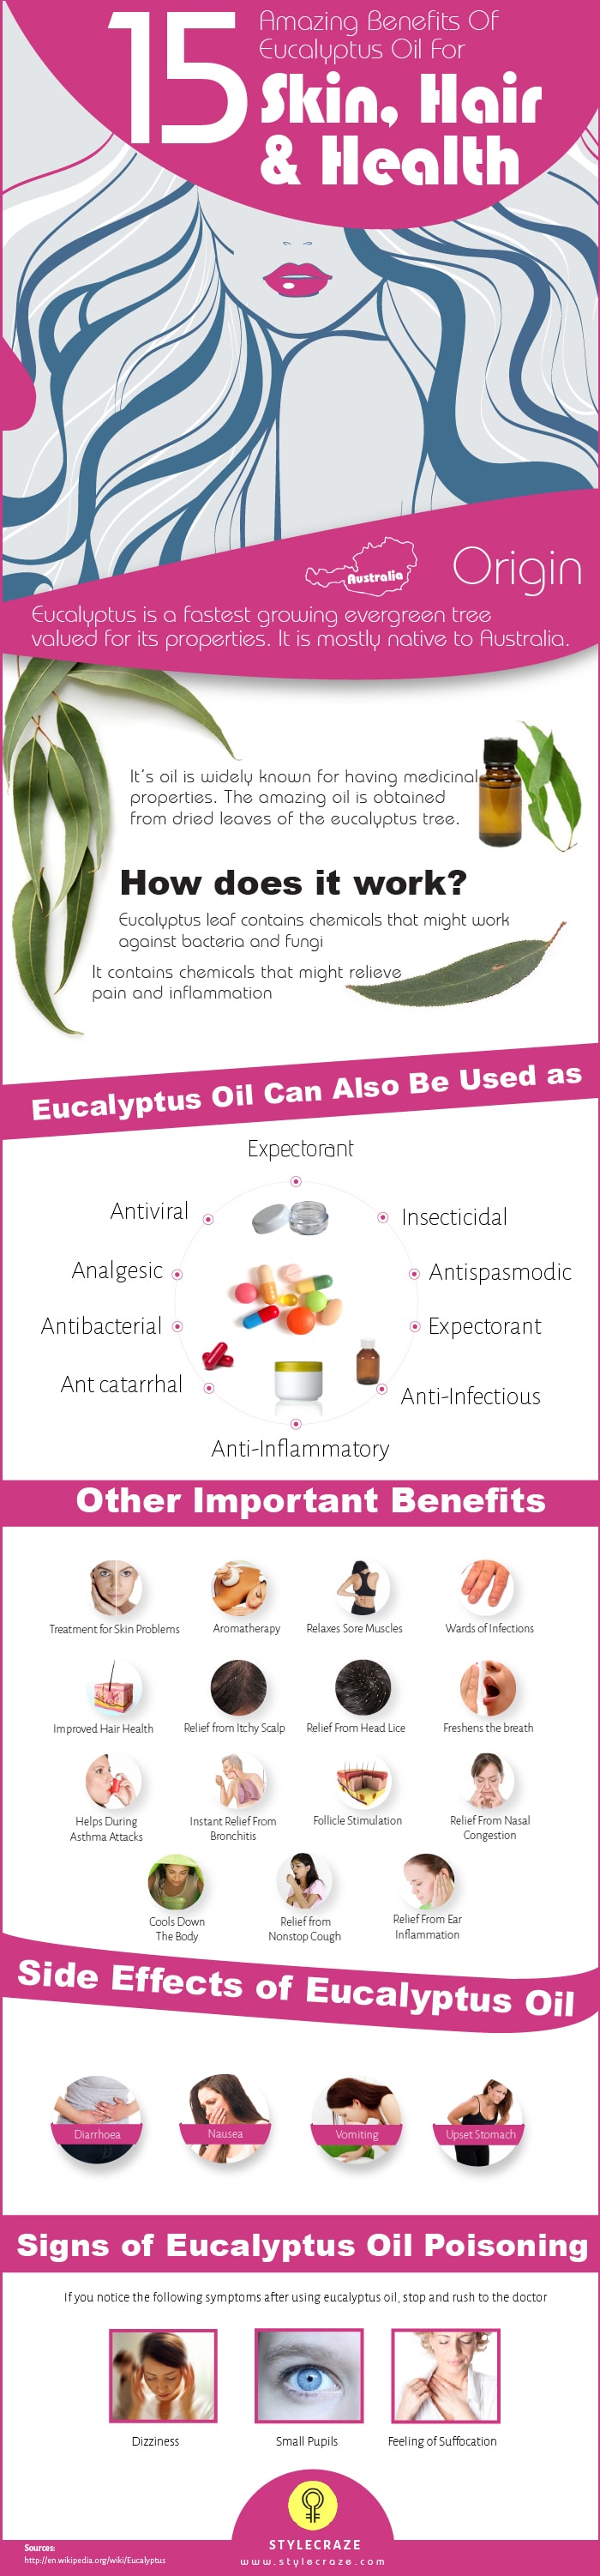 Benefits Of Eucalyptus Oil For Skin, Hair Health